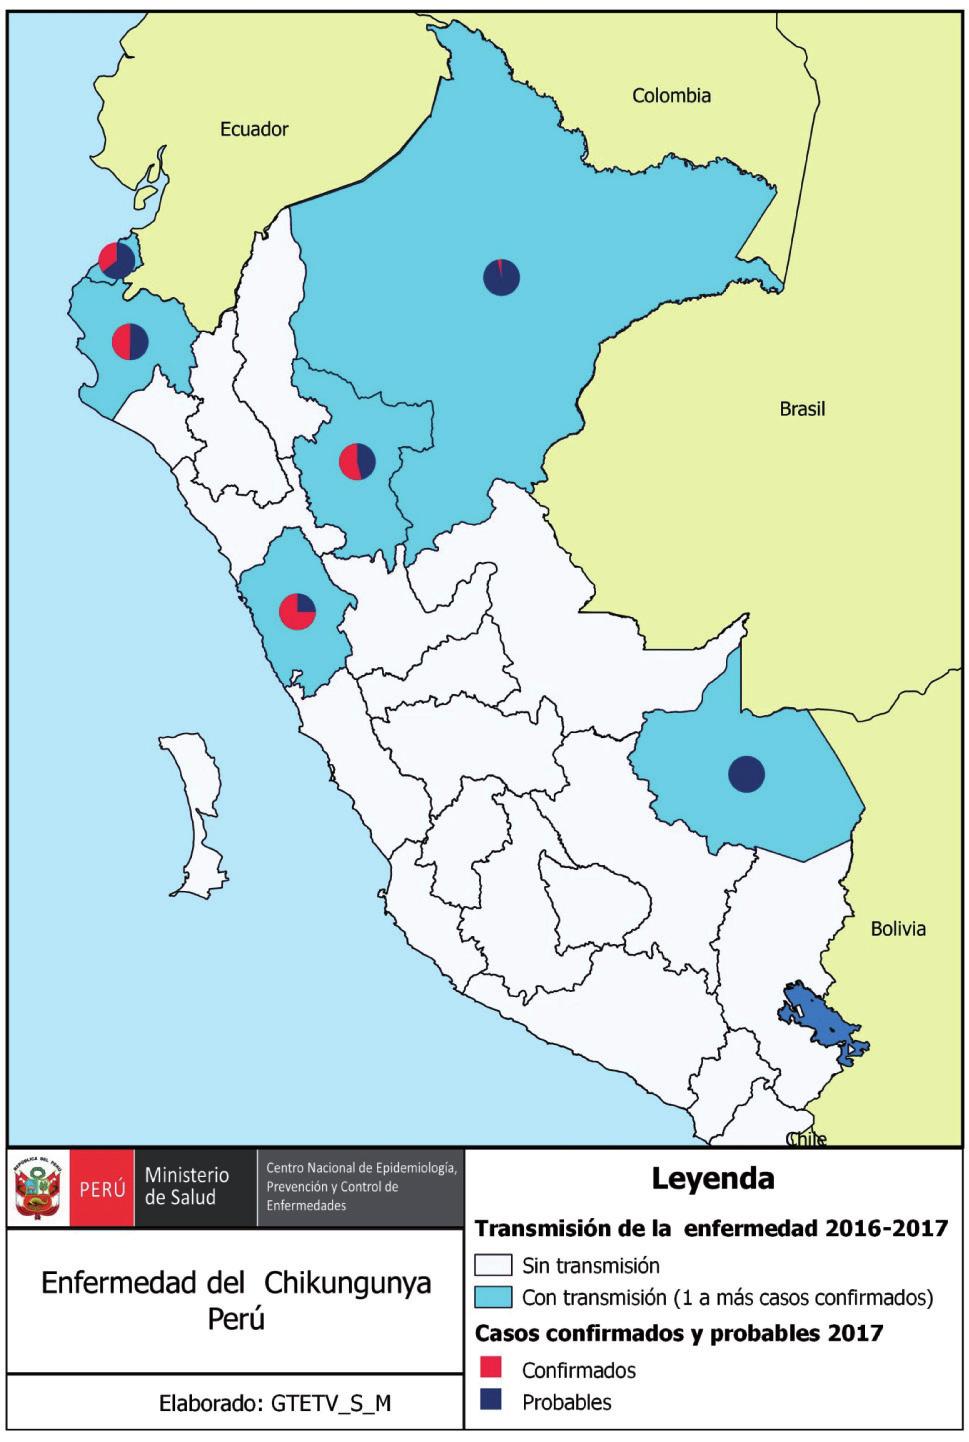 Notificándose casos en los departamentos de Piura (1 distrito), Tumbes (9 distritos), San Martín (2 distritos), Loreto (2 distritos) y Madre de Dios (2 distritos). Tabla 1.